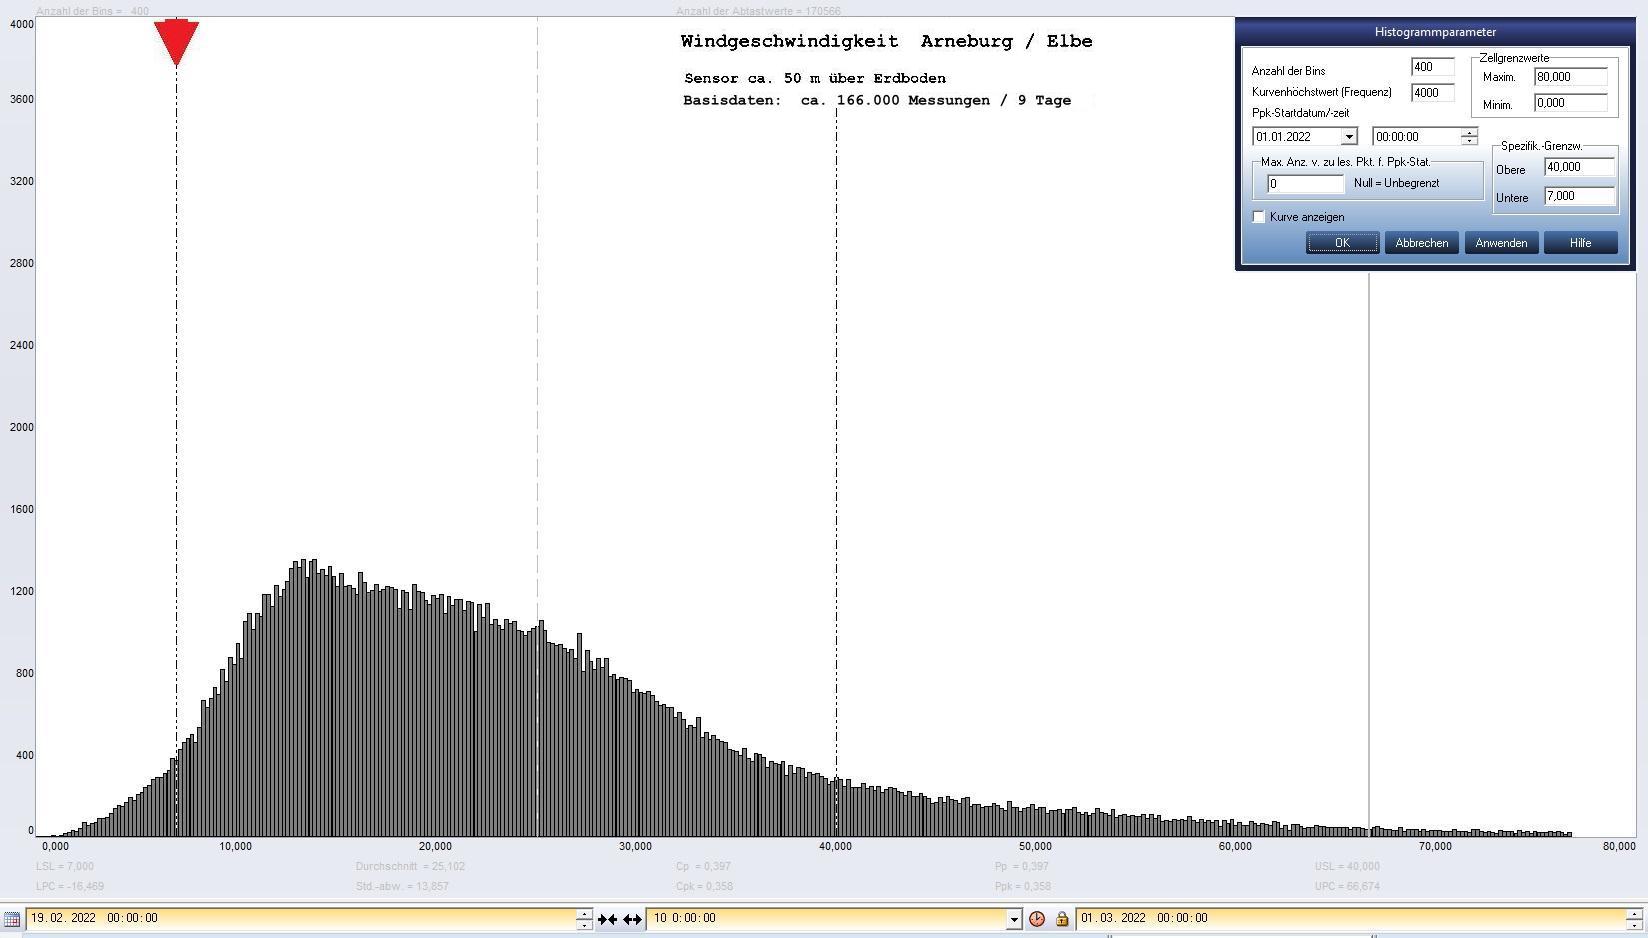 Arneburg 9 Tage Histogramm Winddaten, ab 19.02.2022 
  Sensor auf Gebude, ca. 50 m ber Erdboden, Basis: 5s-Aufzeichnung